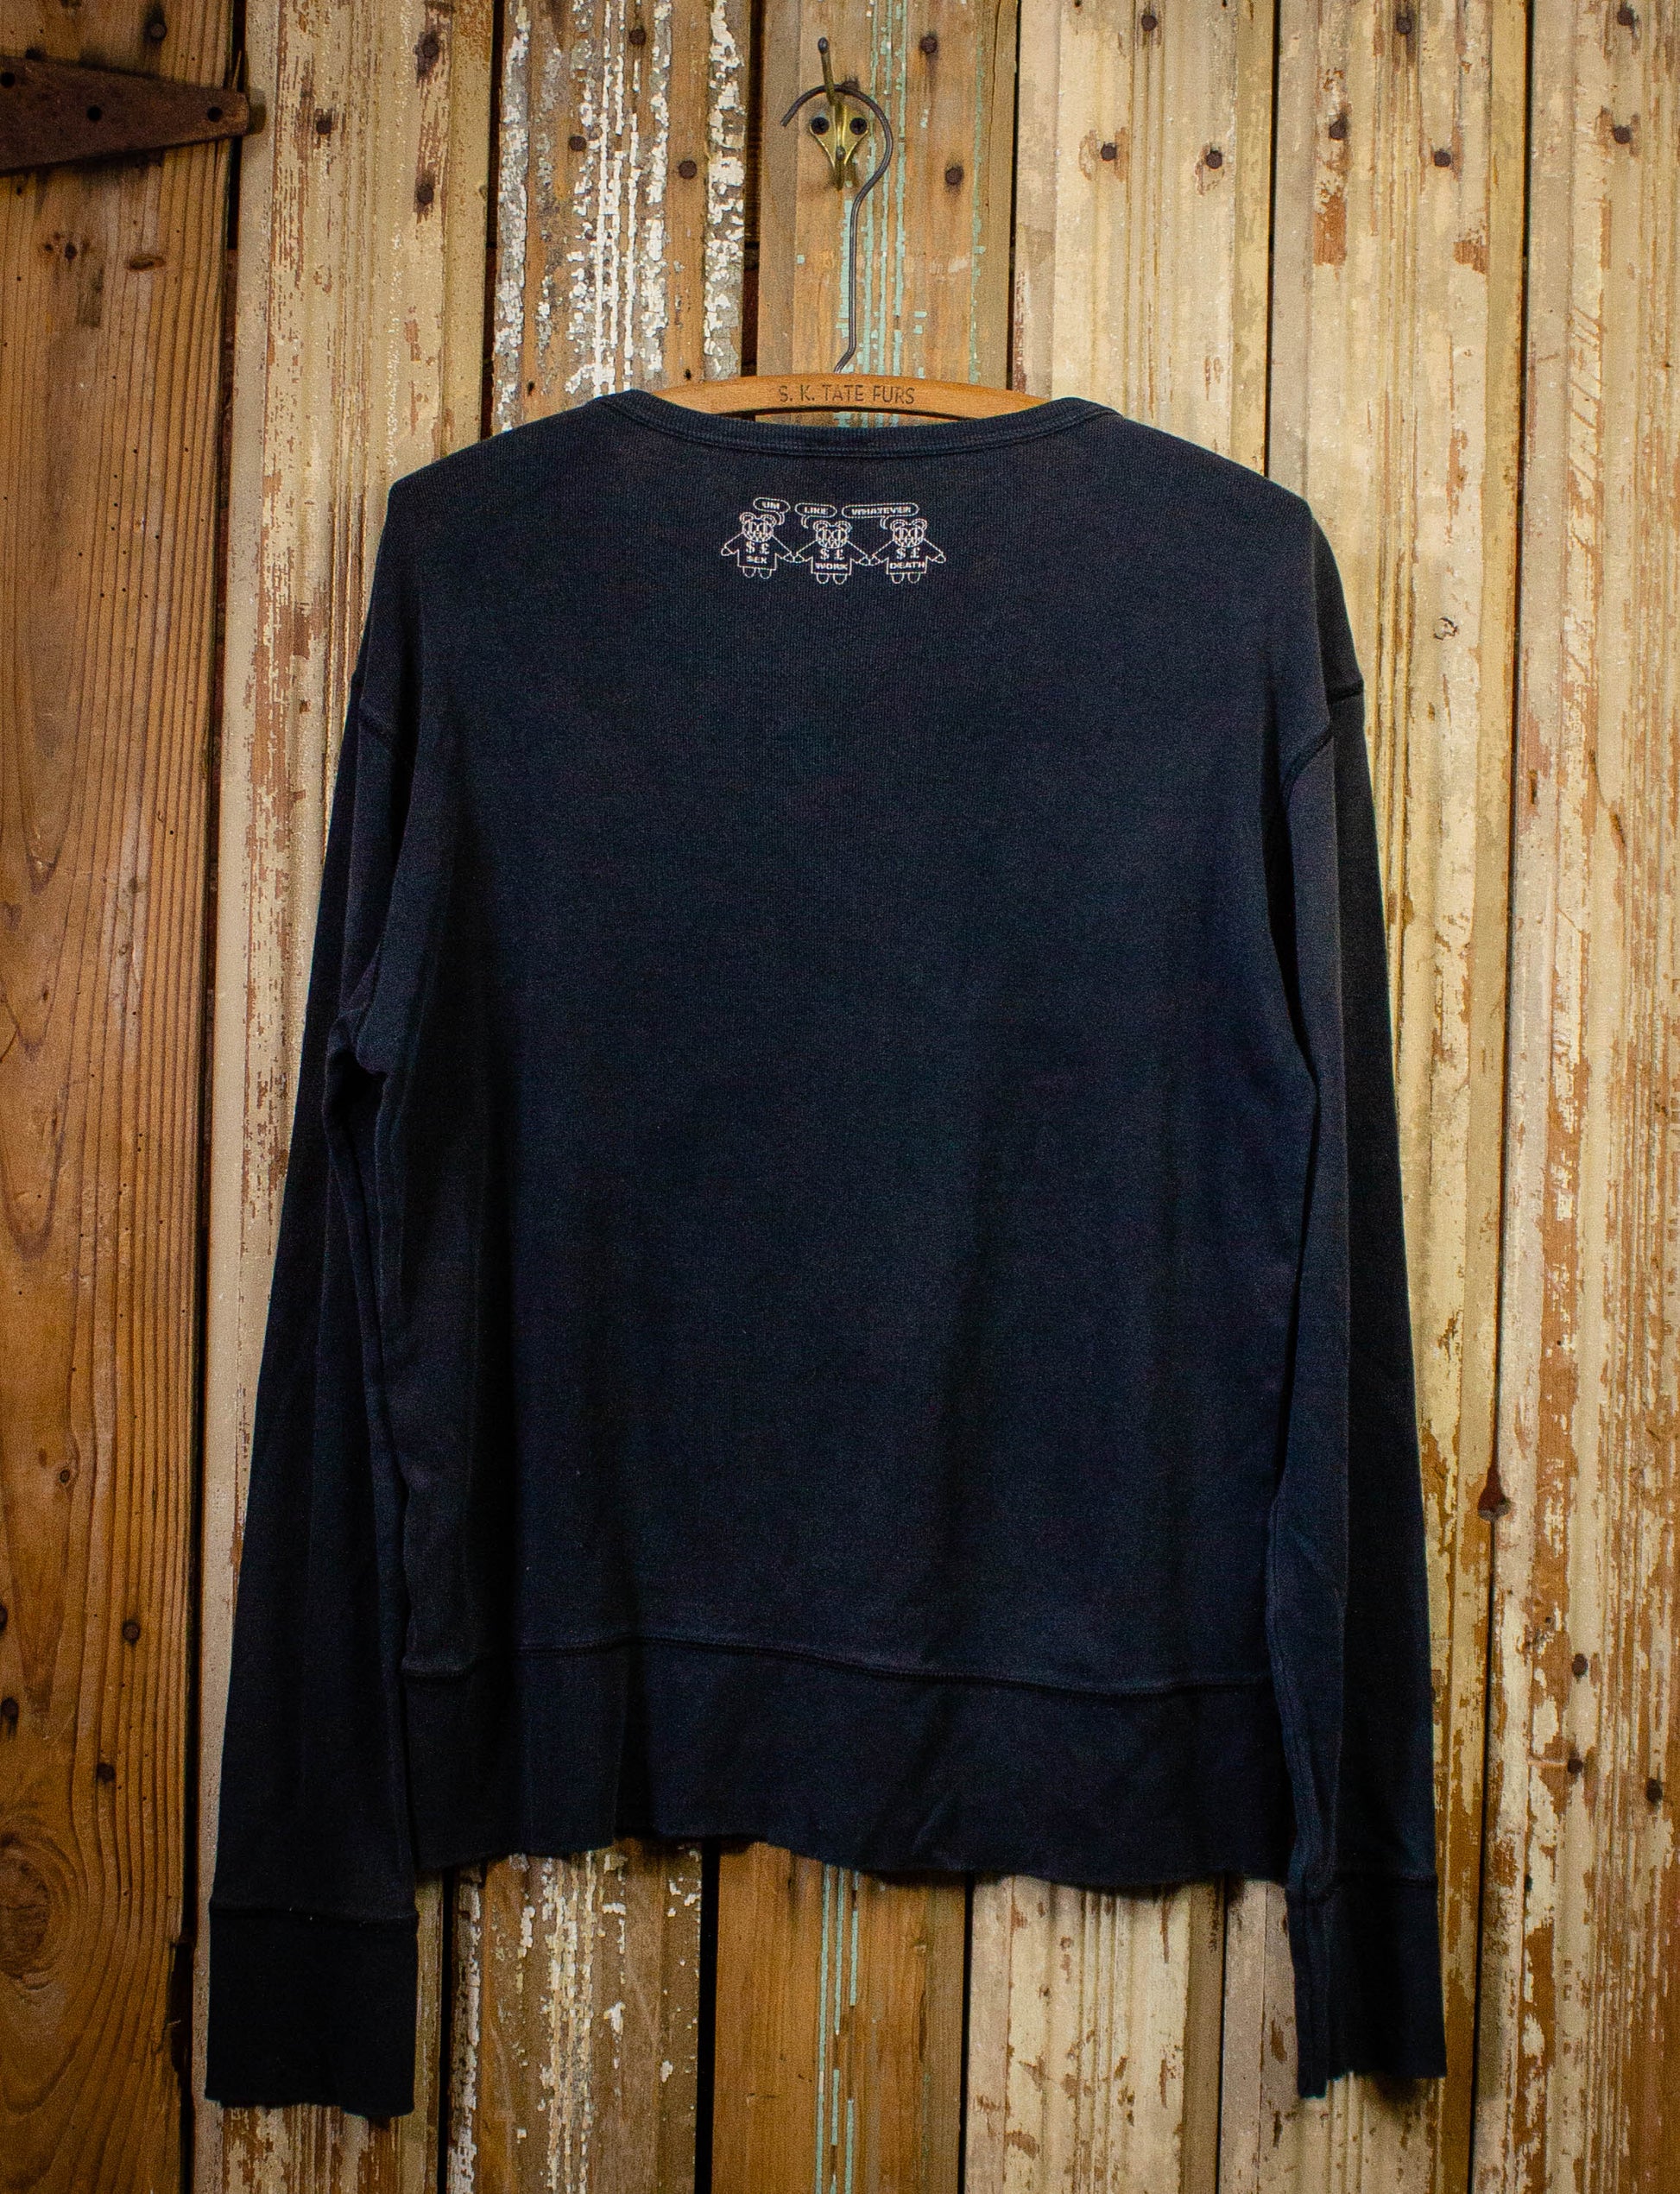 Vintage Radiohead Fast Track Concert Sweatshirt 2000 Black XL